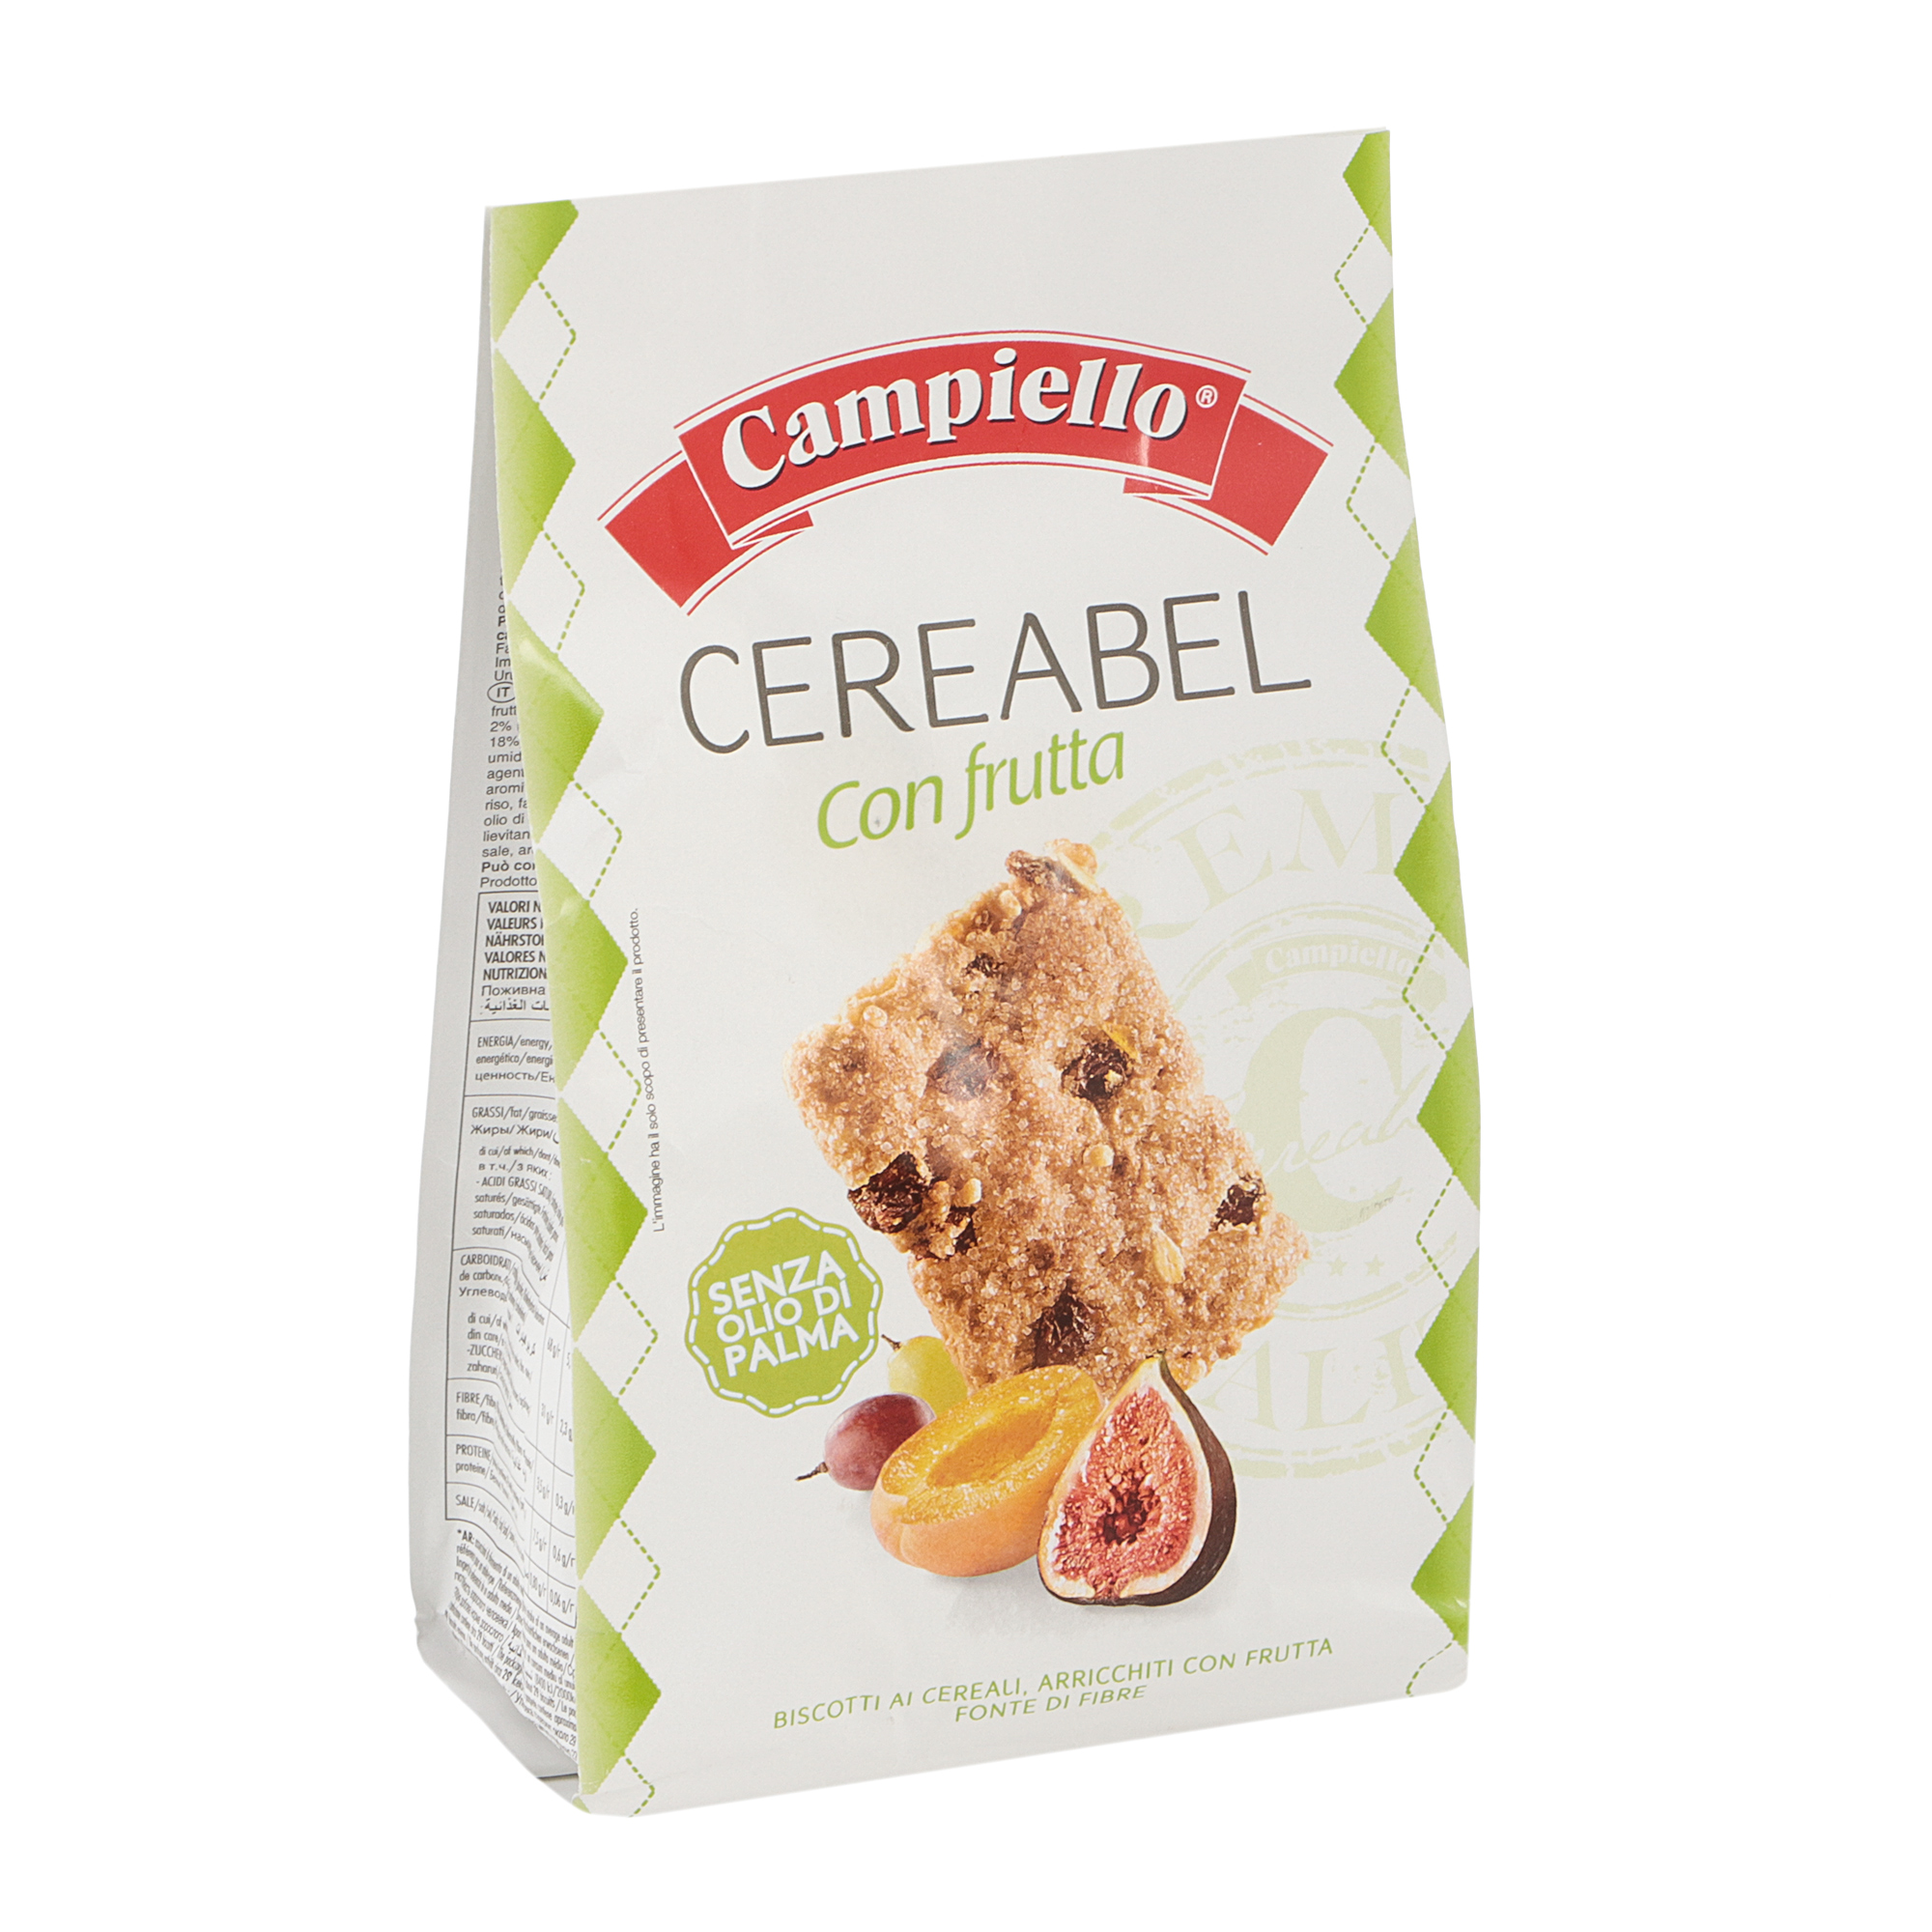 Печенье Campiello CEREABEL Con frutta 220 г масло киприно сливочное алтайское 82% бзмж 200 гр